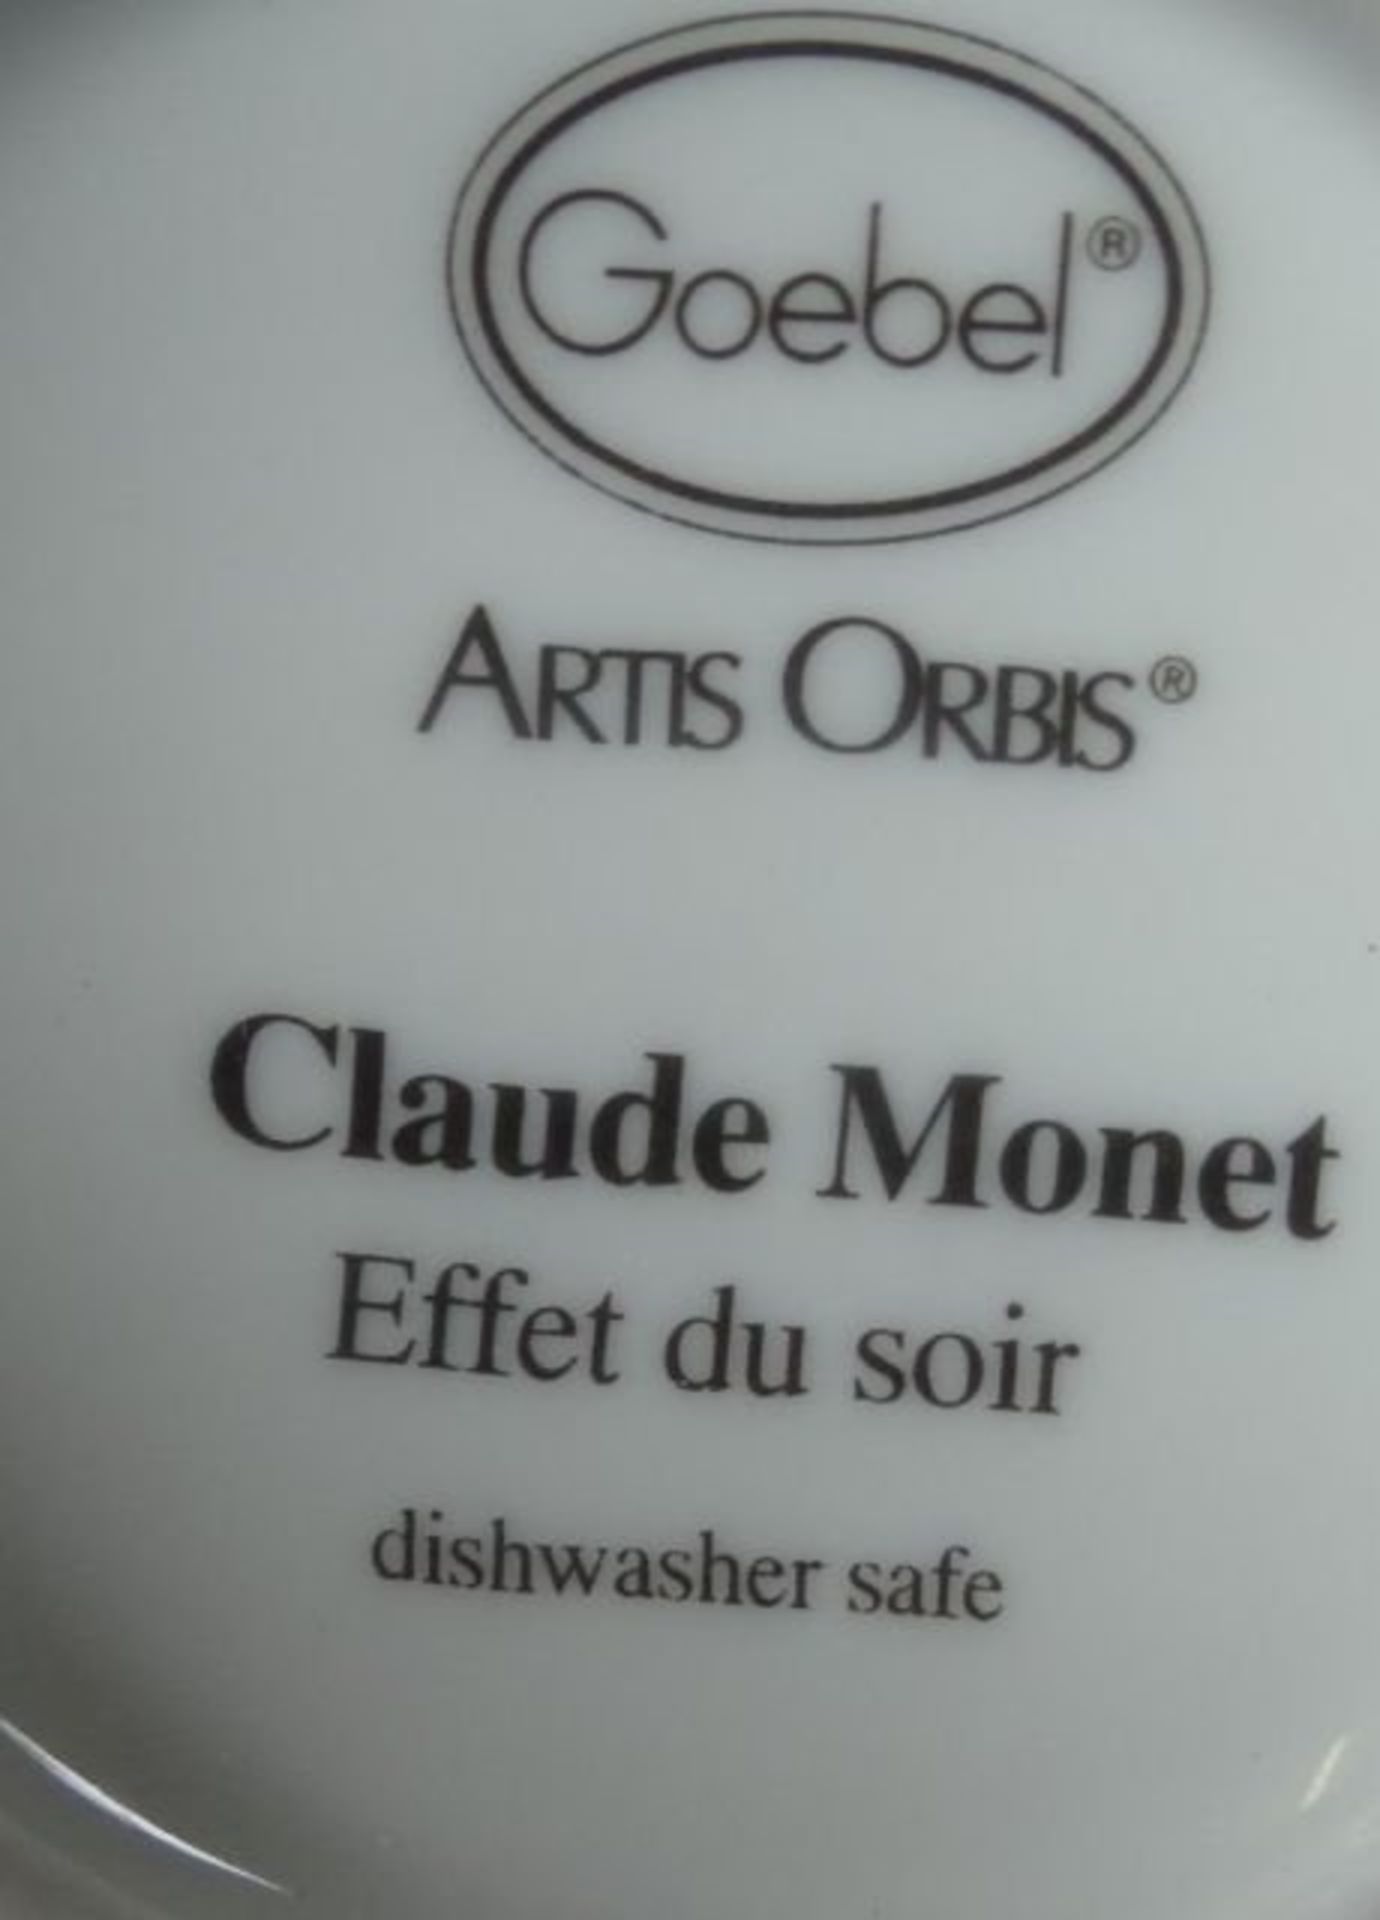 Espressotasse mit U.T. "Goebel" Artis Orbis, nach Monet- - -22.61 % buyer's premium on the hammer - Bild 3 aus 3